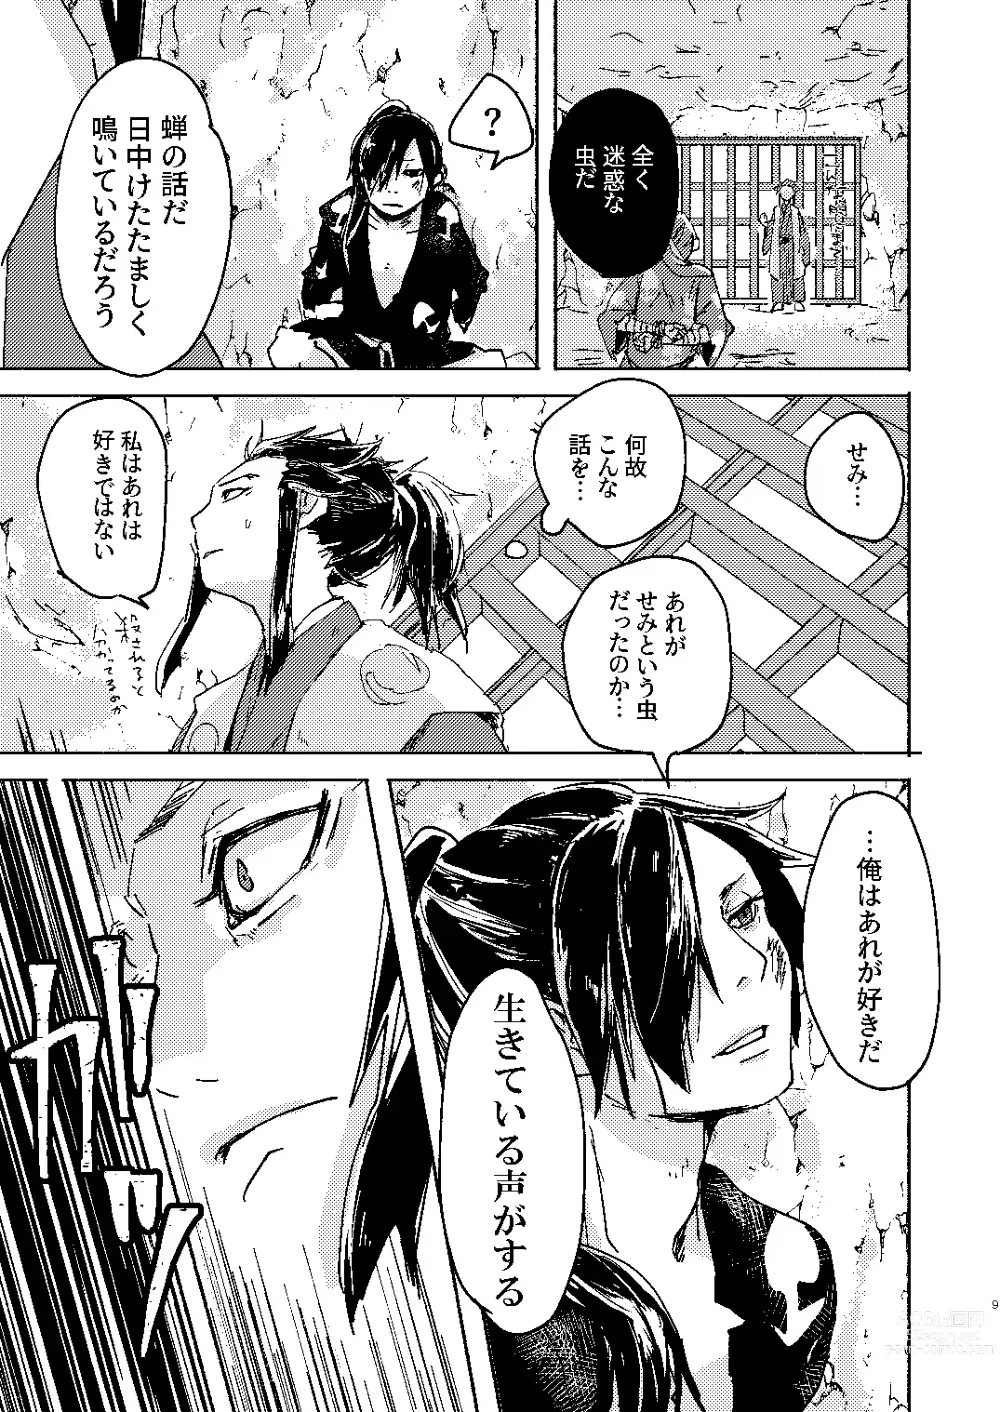 Page 9 of doujinshi Zankyou ni Miru Utsusemi no Kimi